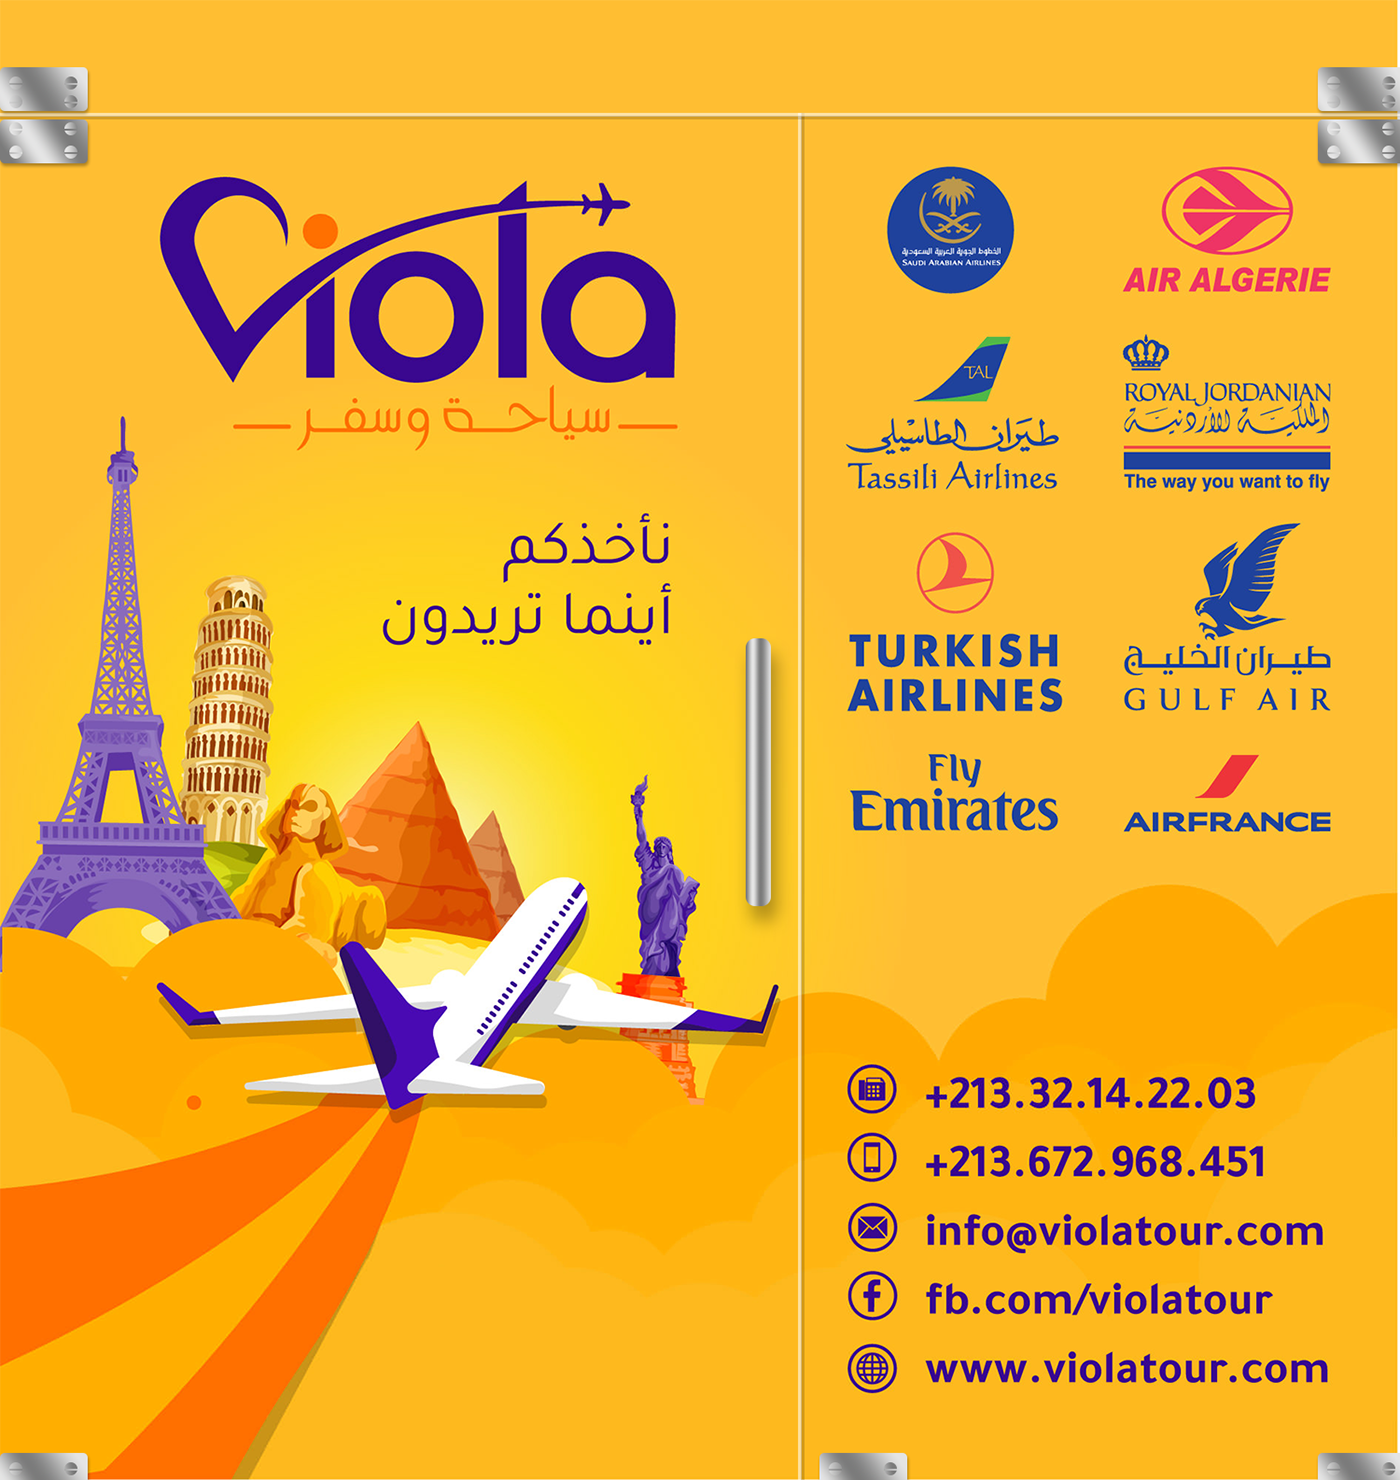 agence agency brand identity logo plane tourism Travel Viola voyage